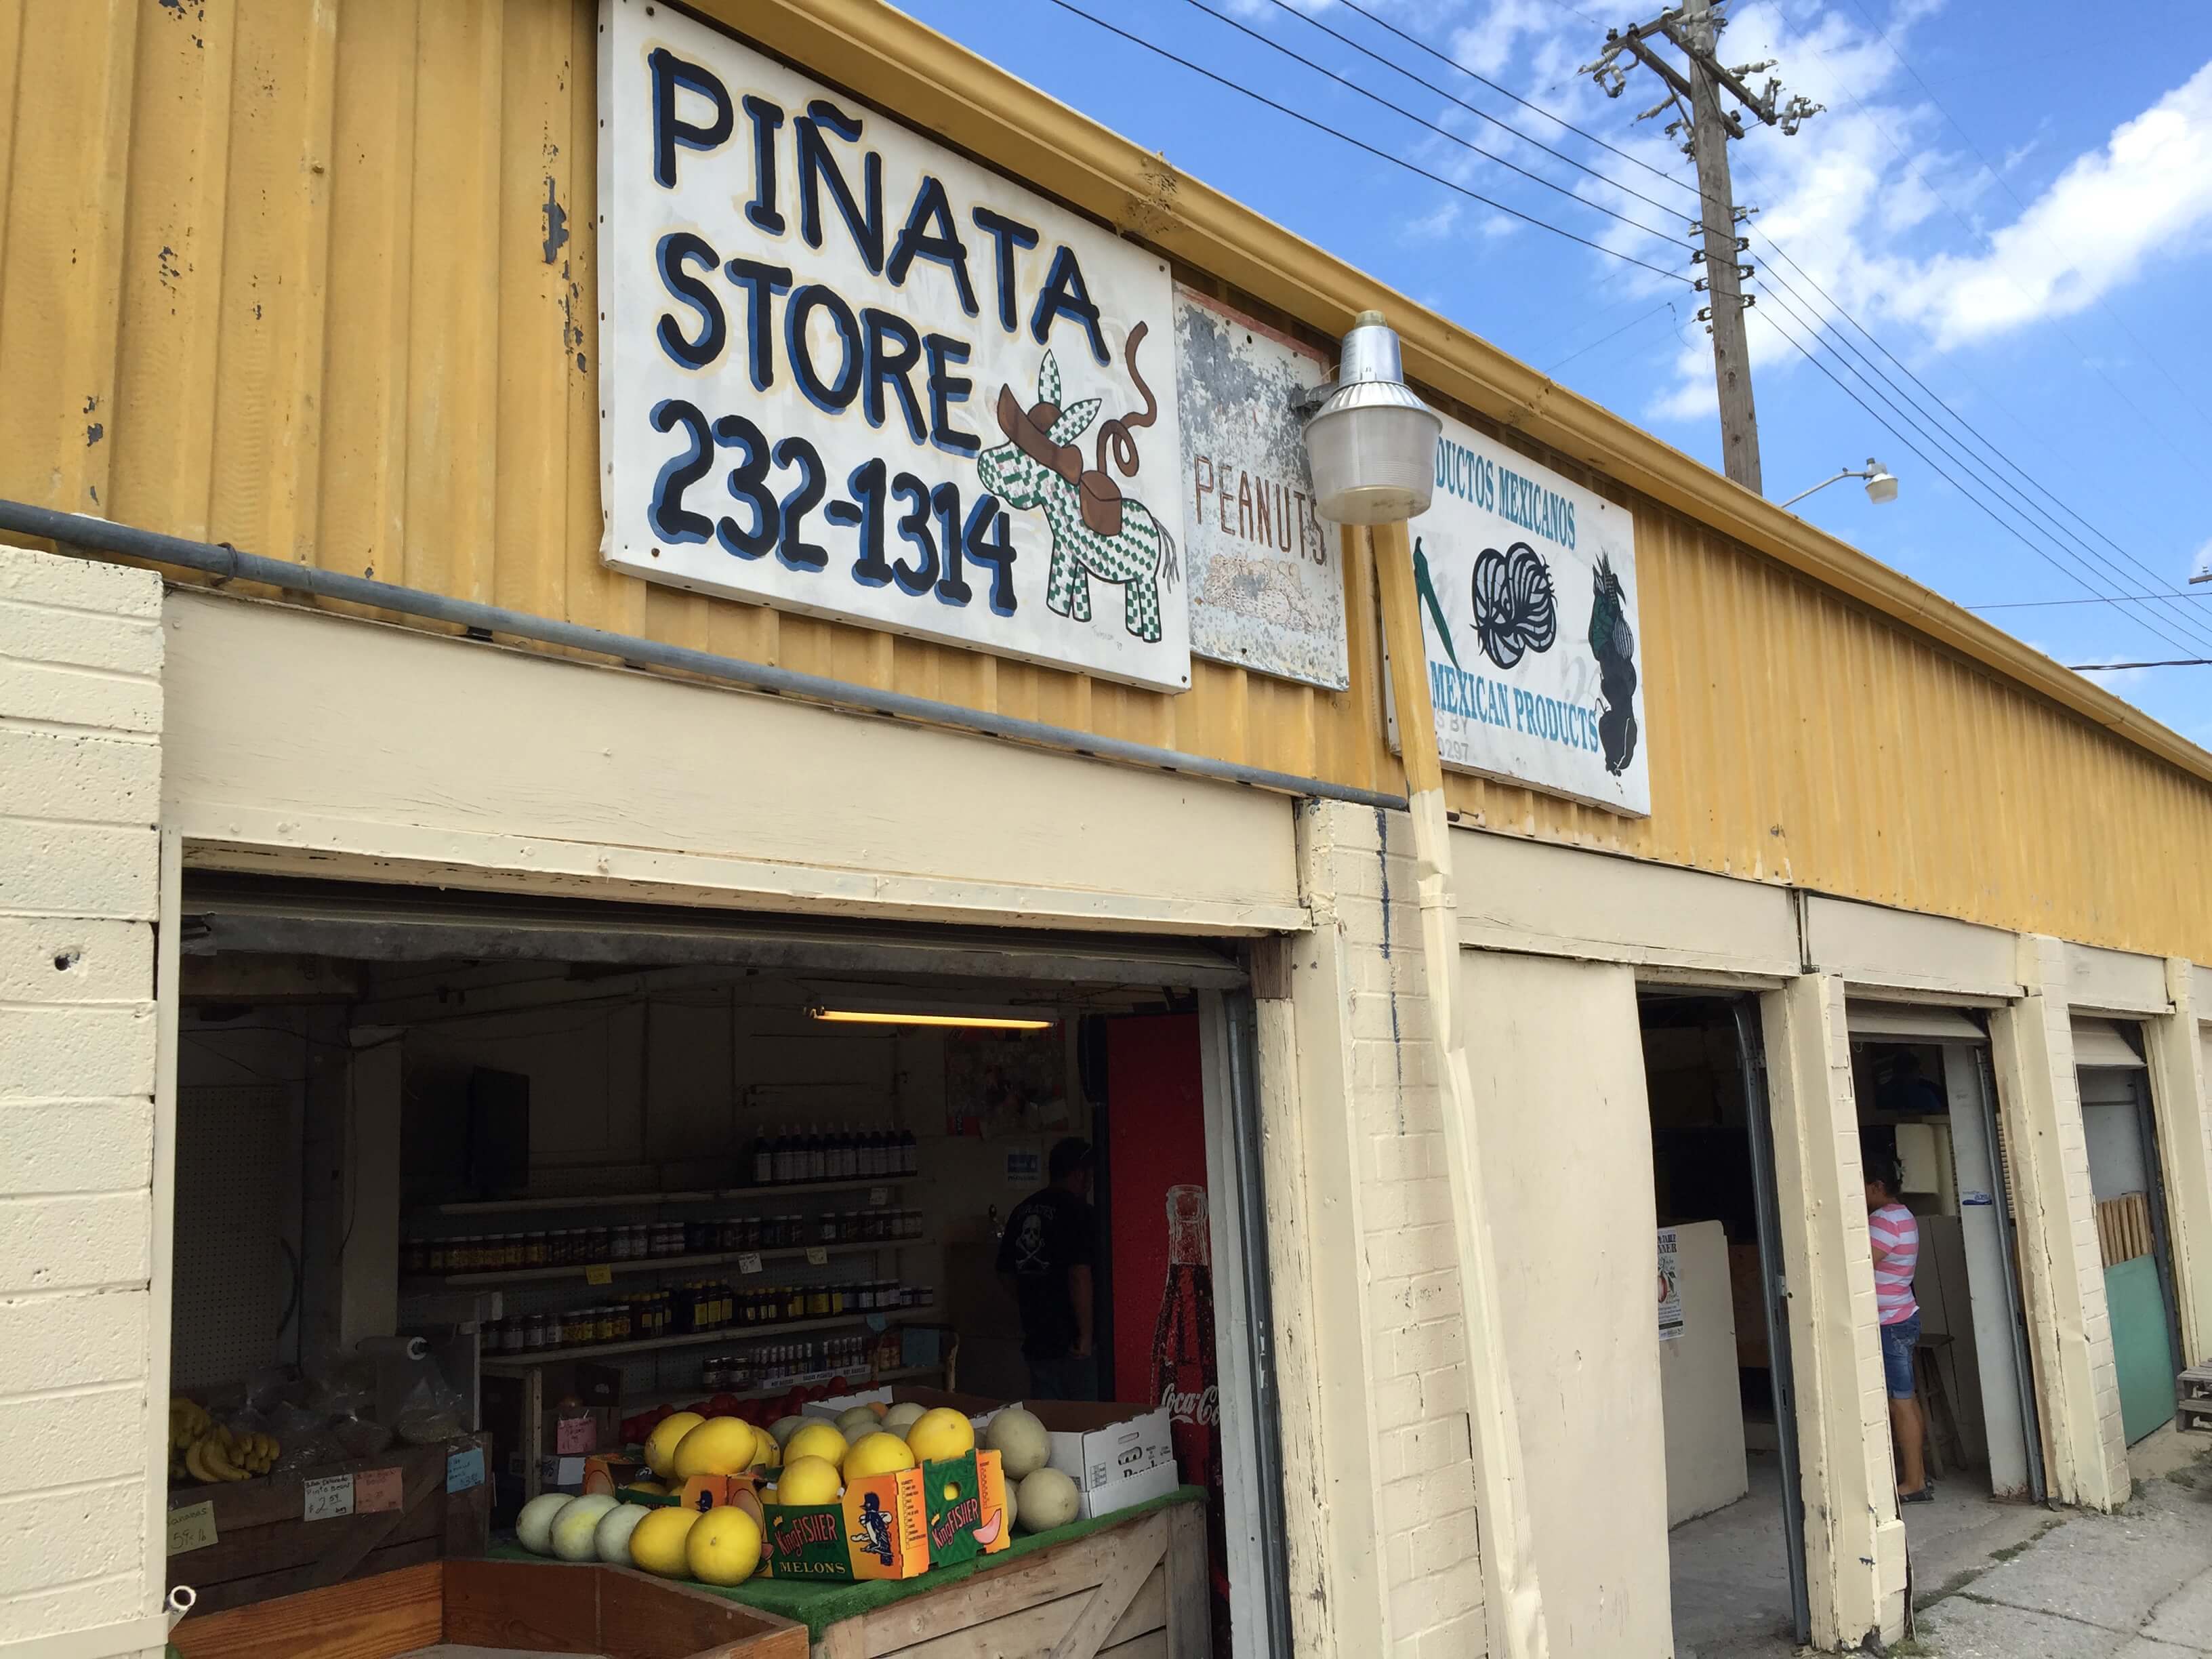 Pinata Store